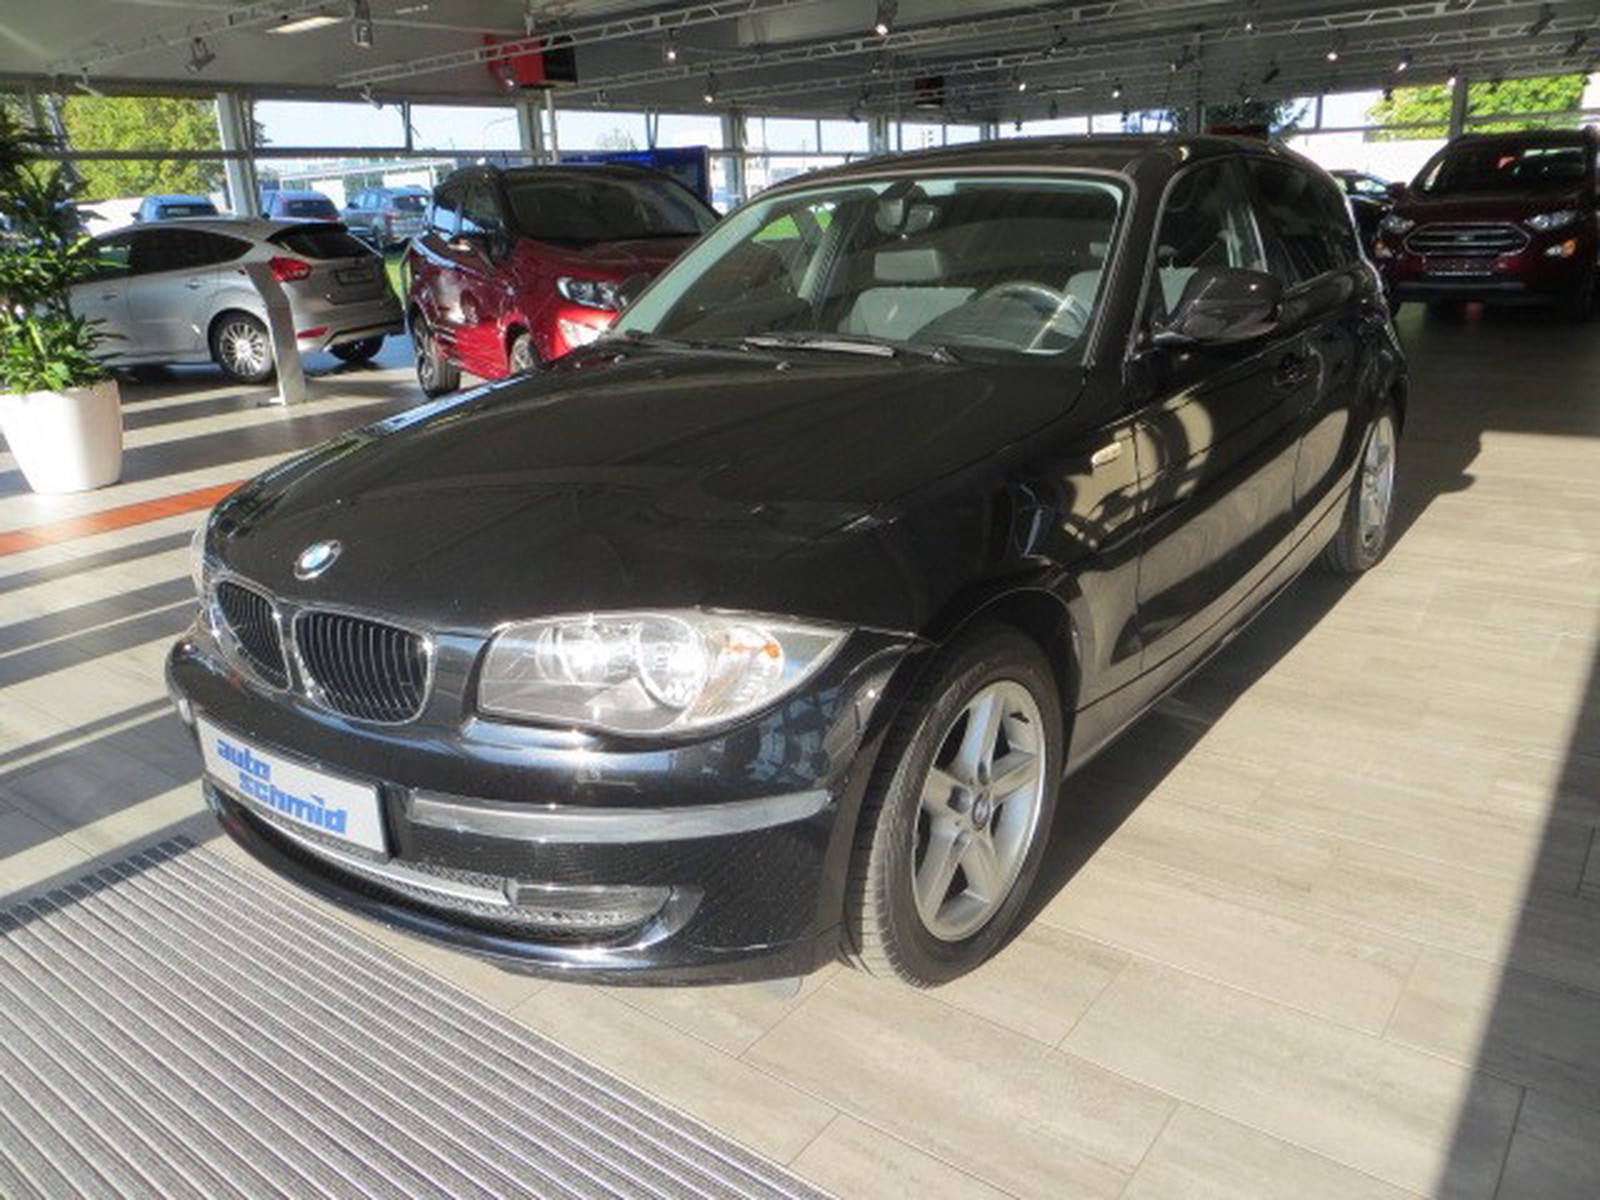 BMW 118 d gebraucht kaufen in Rottweil Preis 6770 eur